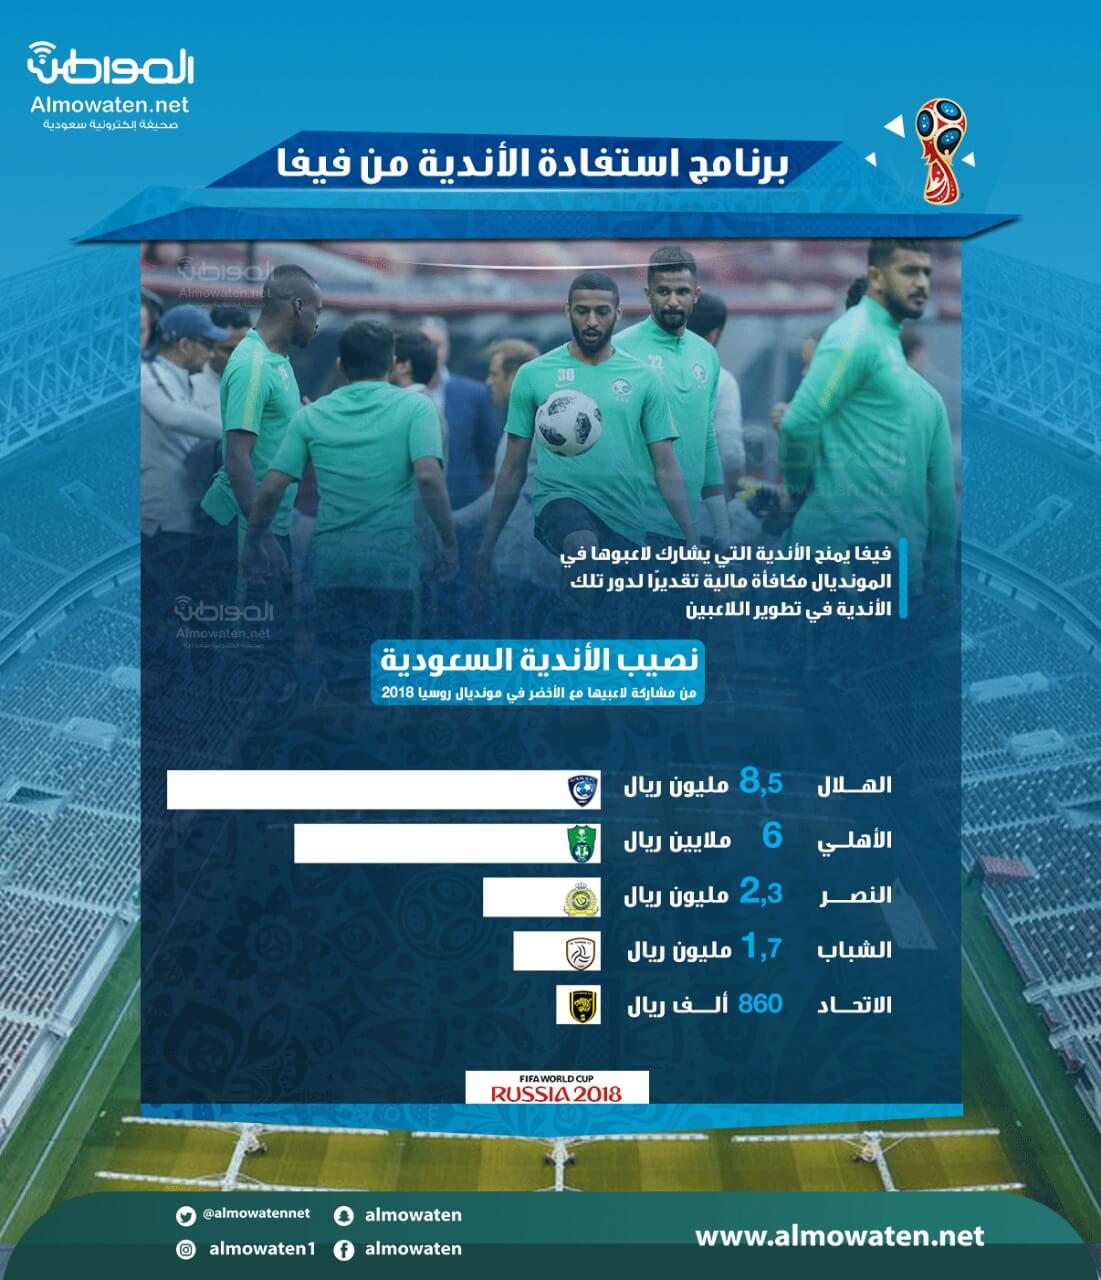 برنامج استفادة الأندية من فيفا يمنح الأندية السعودية 20 مليون ريال